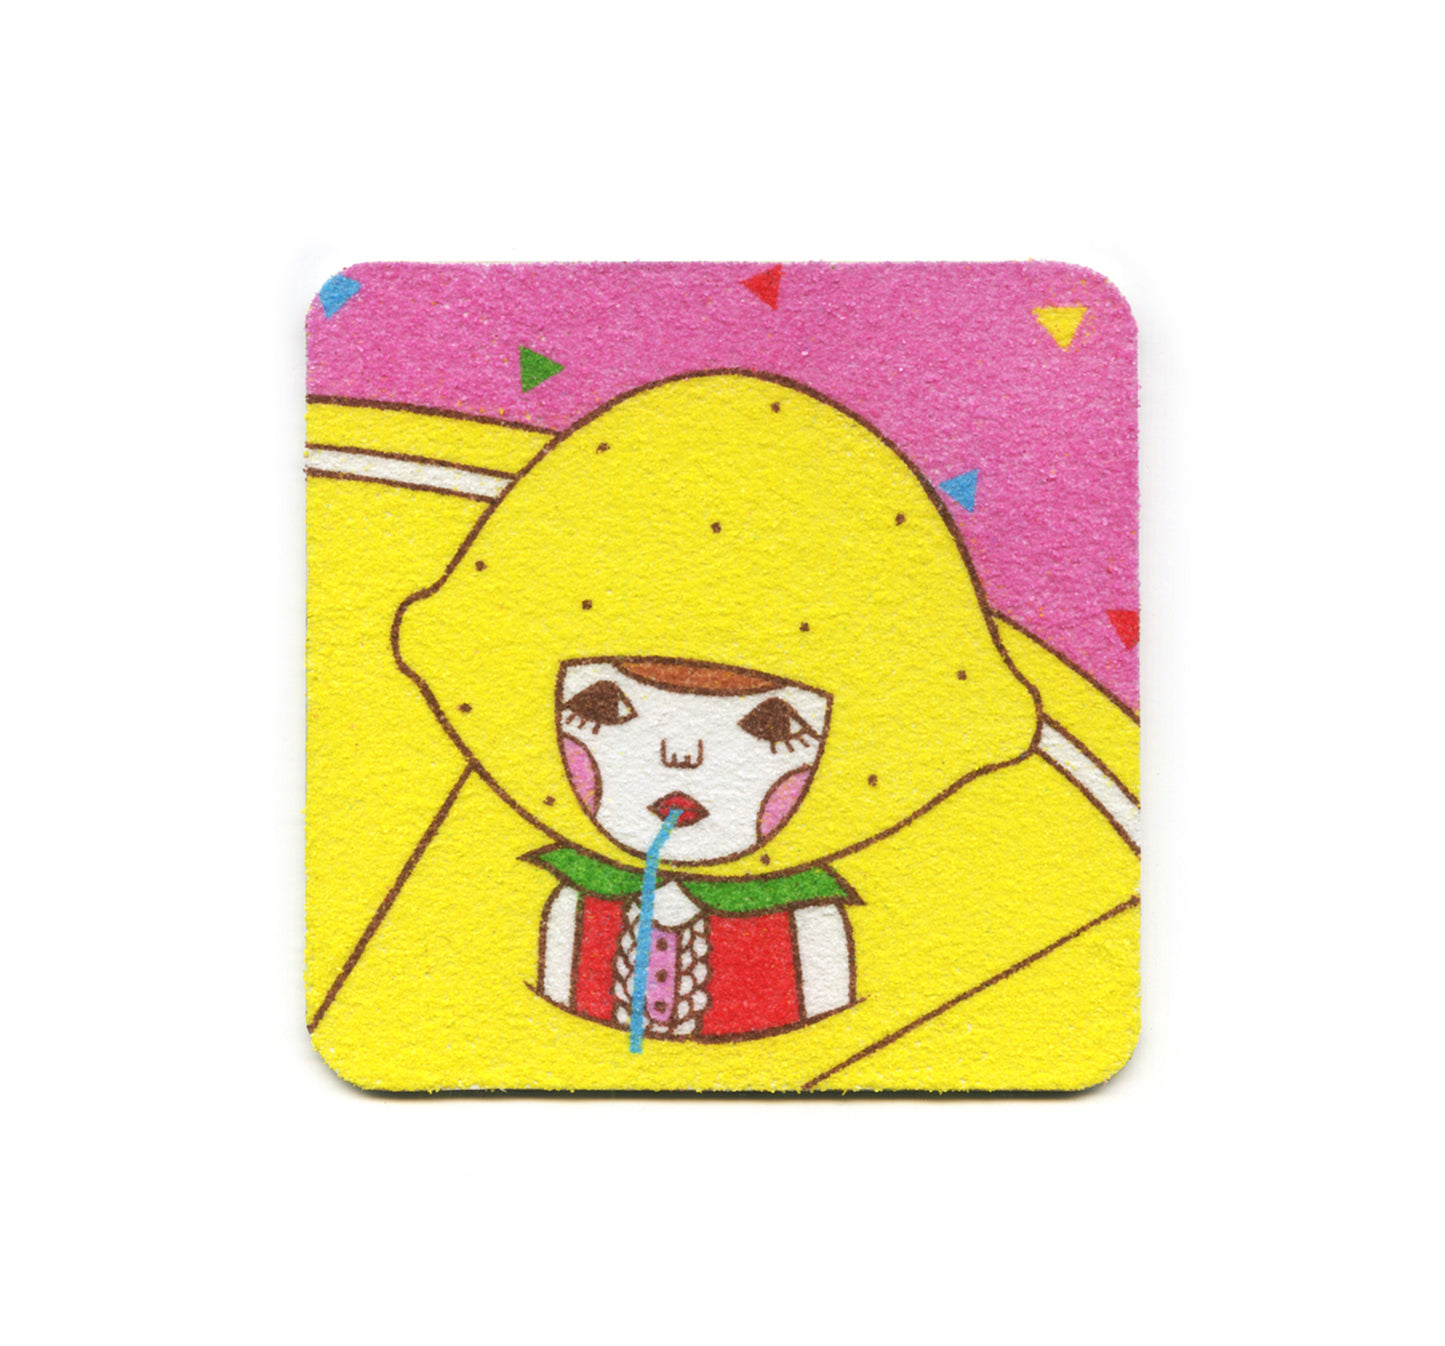 S2 Naoshi - In A Lemonade Coaster